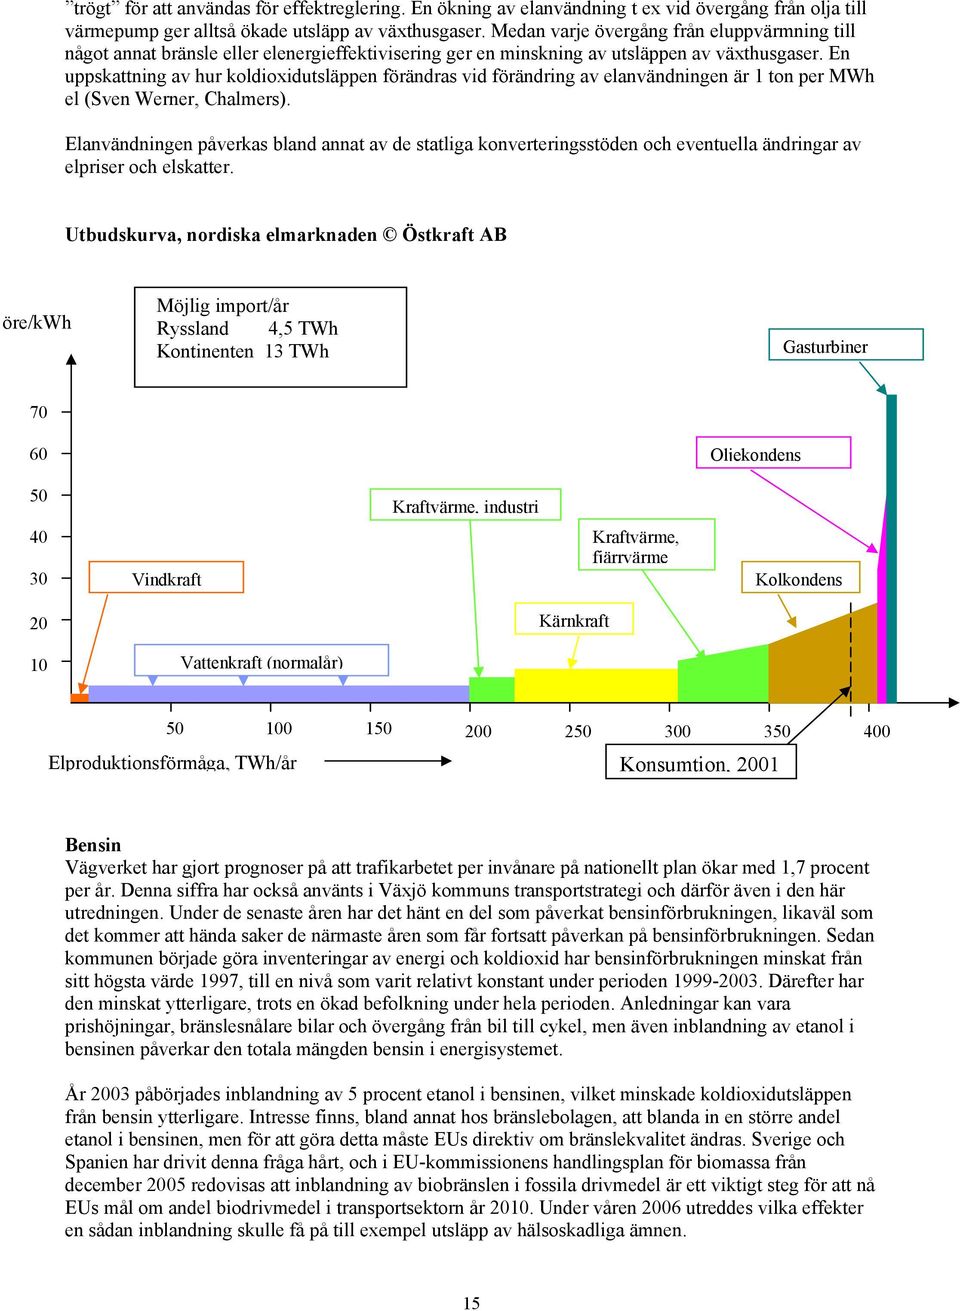 En uppskattning av hur koldioxidutsläppen förändras vid förändring av elanvändningen är 1 ton per MWh el (Sven Werner, Chalmers).